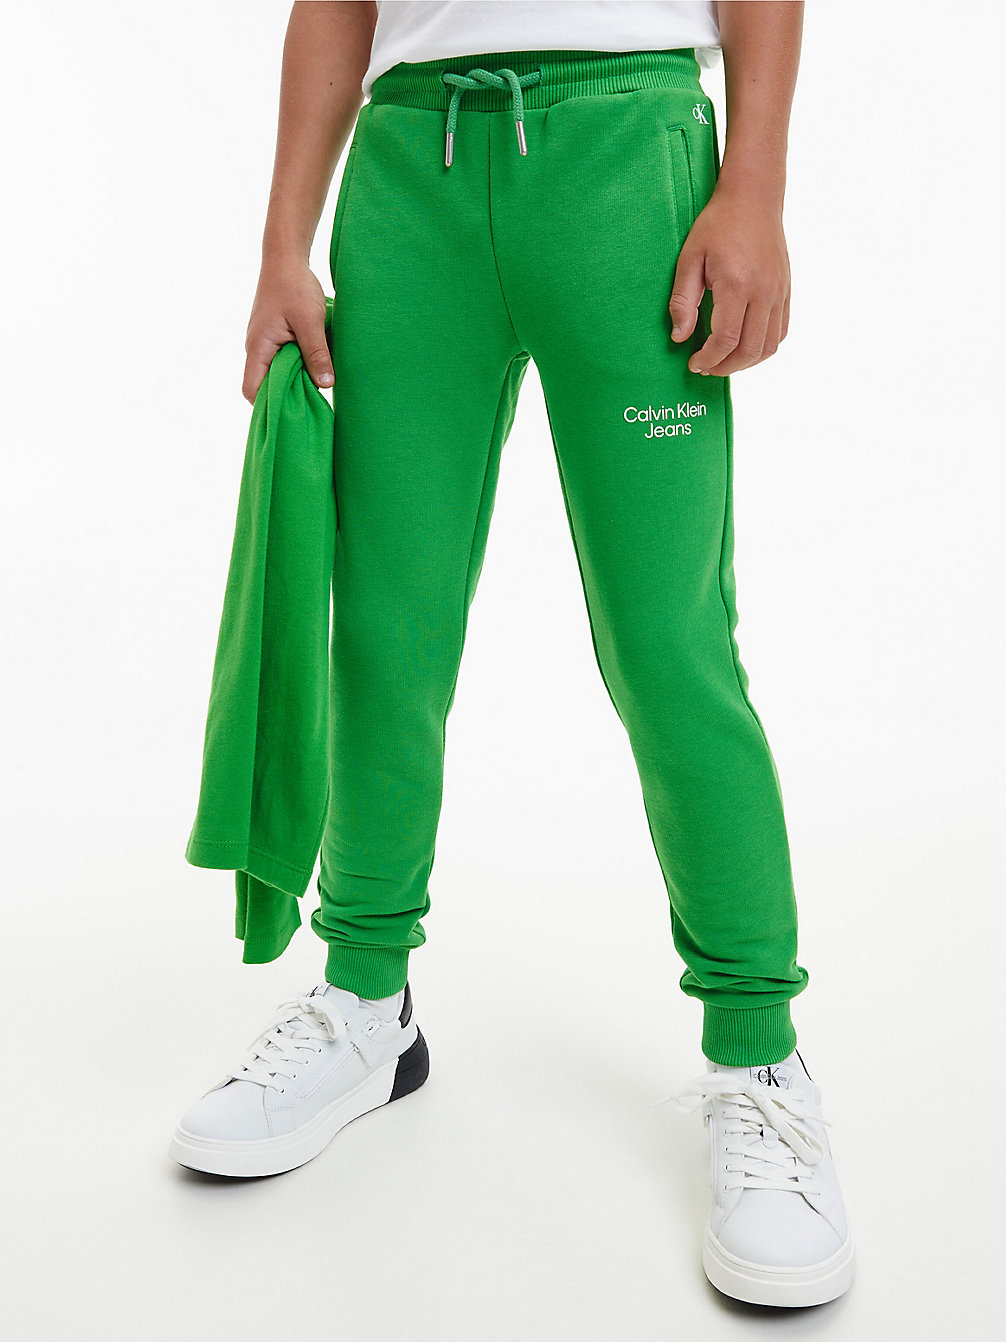 GALVANIC GREEN Jogginghose Aus Bio-Baumwolle undefined boys Calvin Klein